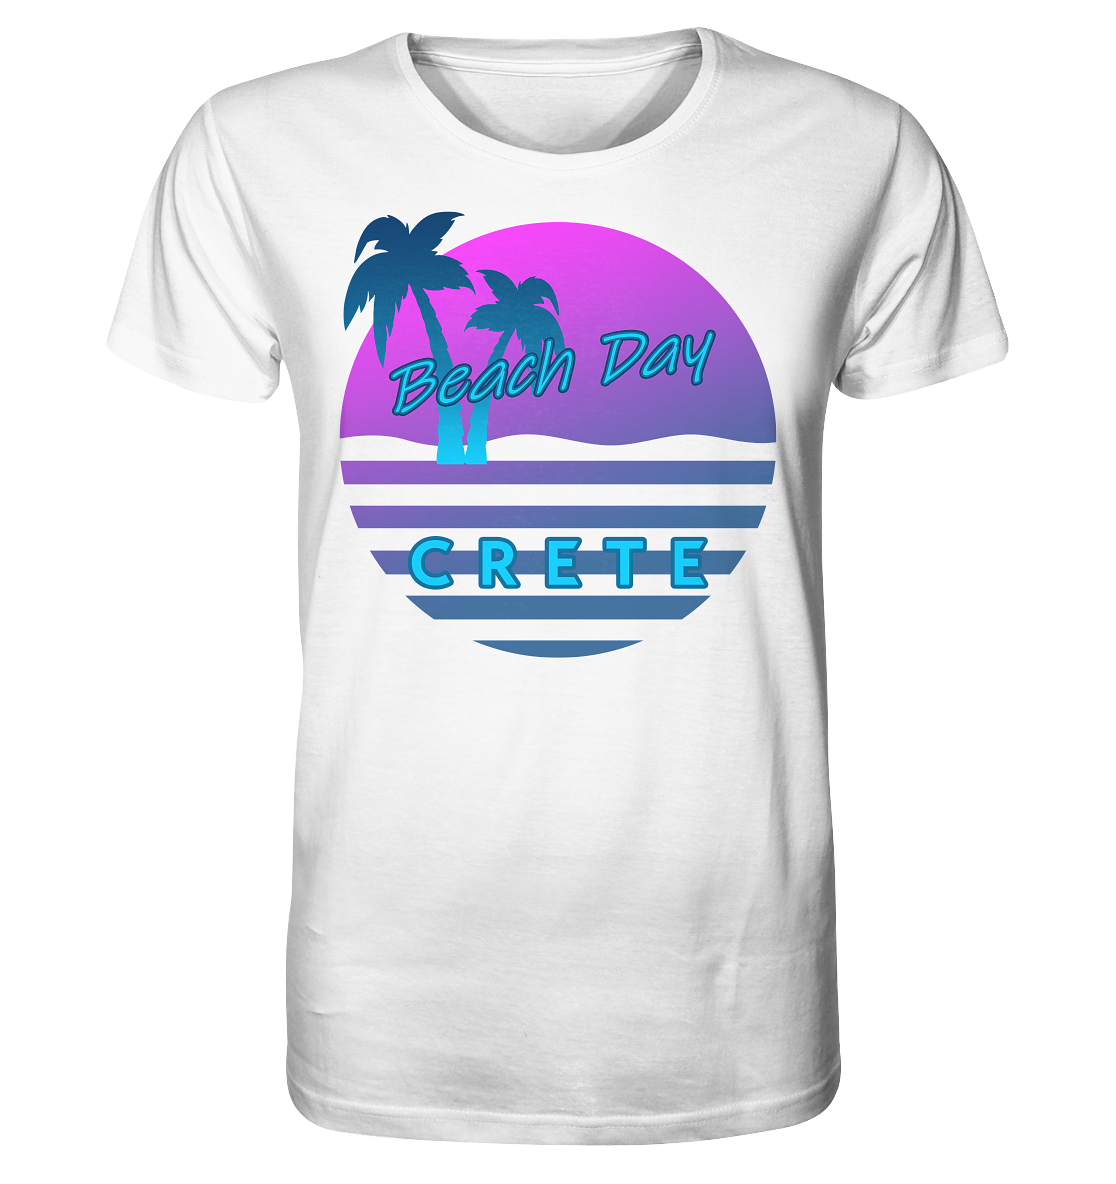 Beach Day Crete - Organic Shirt